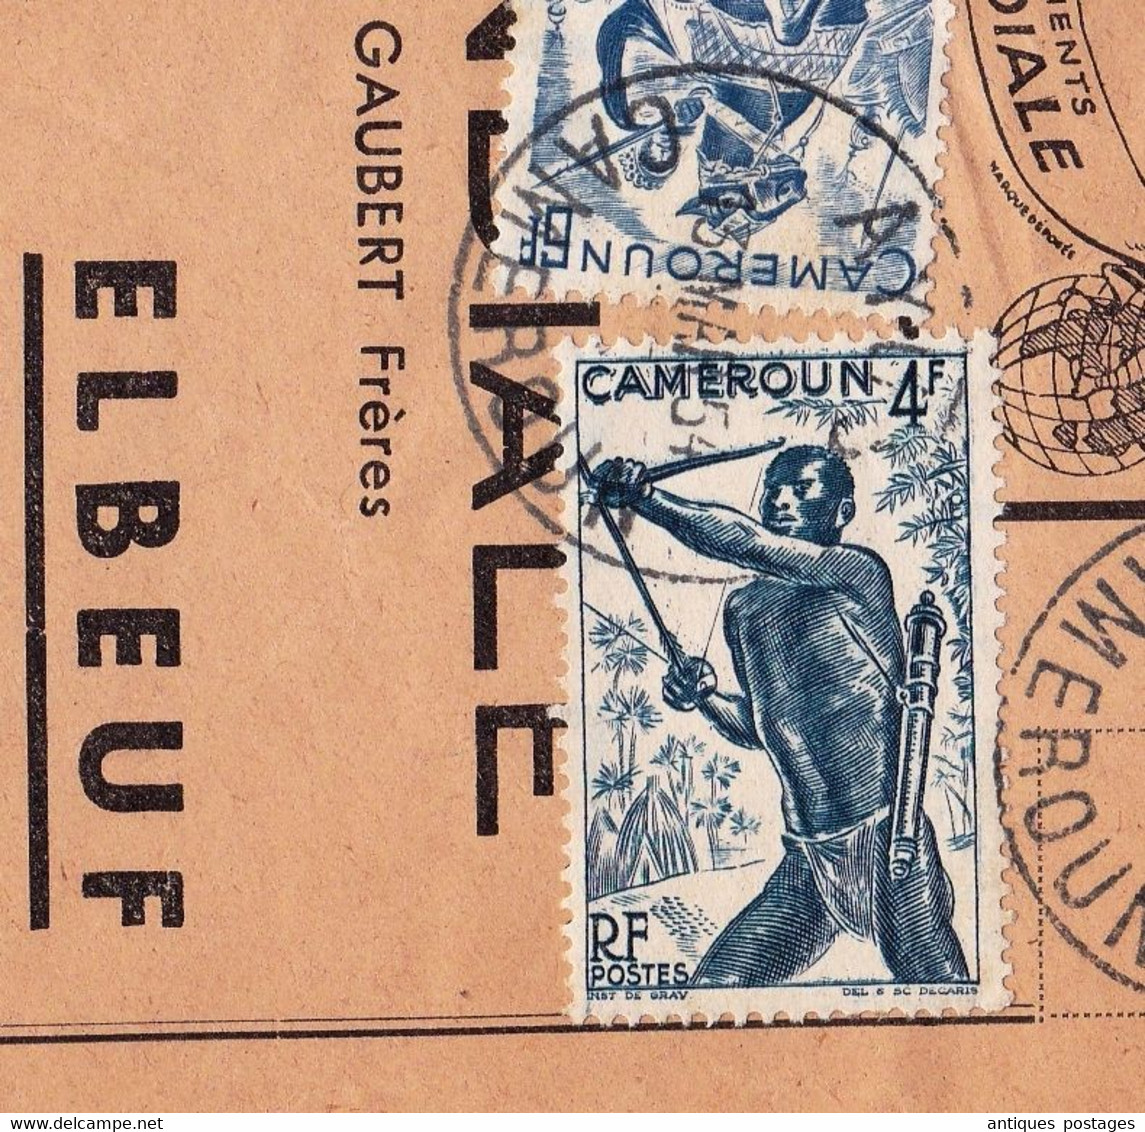 Lettre Ayos 1954 Cameroun Chemises & Vêtements La Mondiale Elboeuf Seine Maritime - Brieven En Documenten